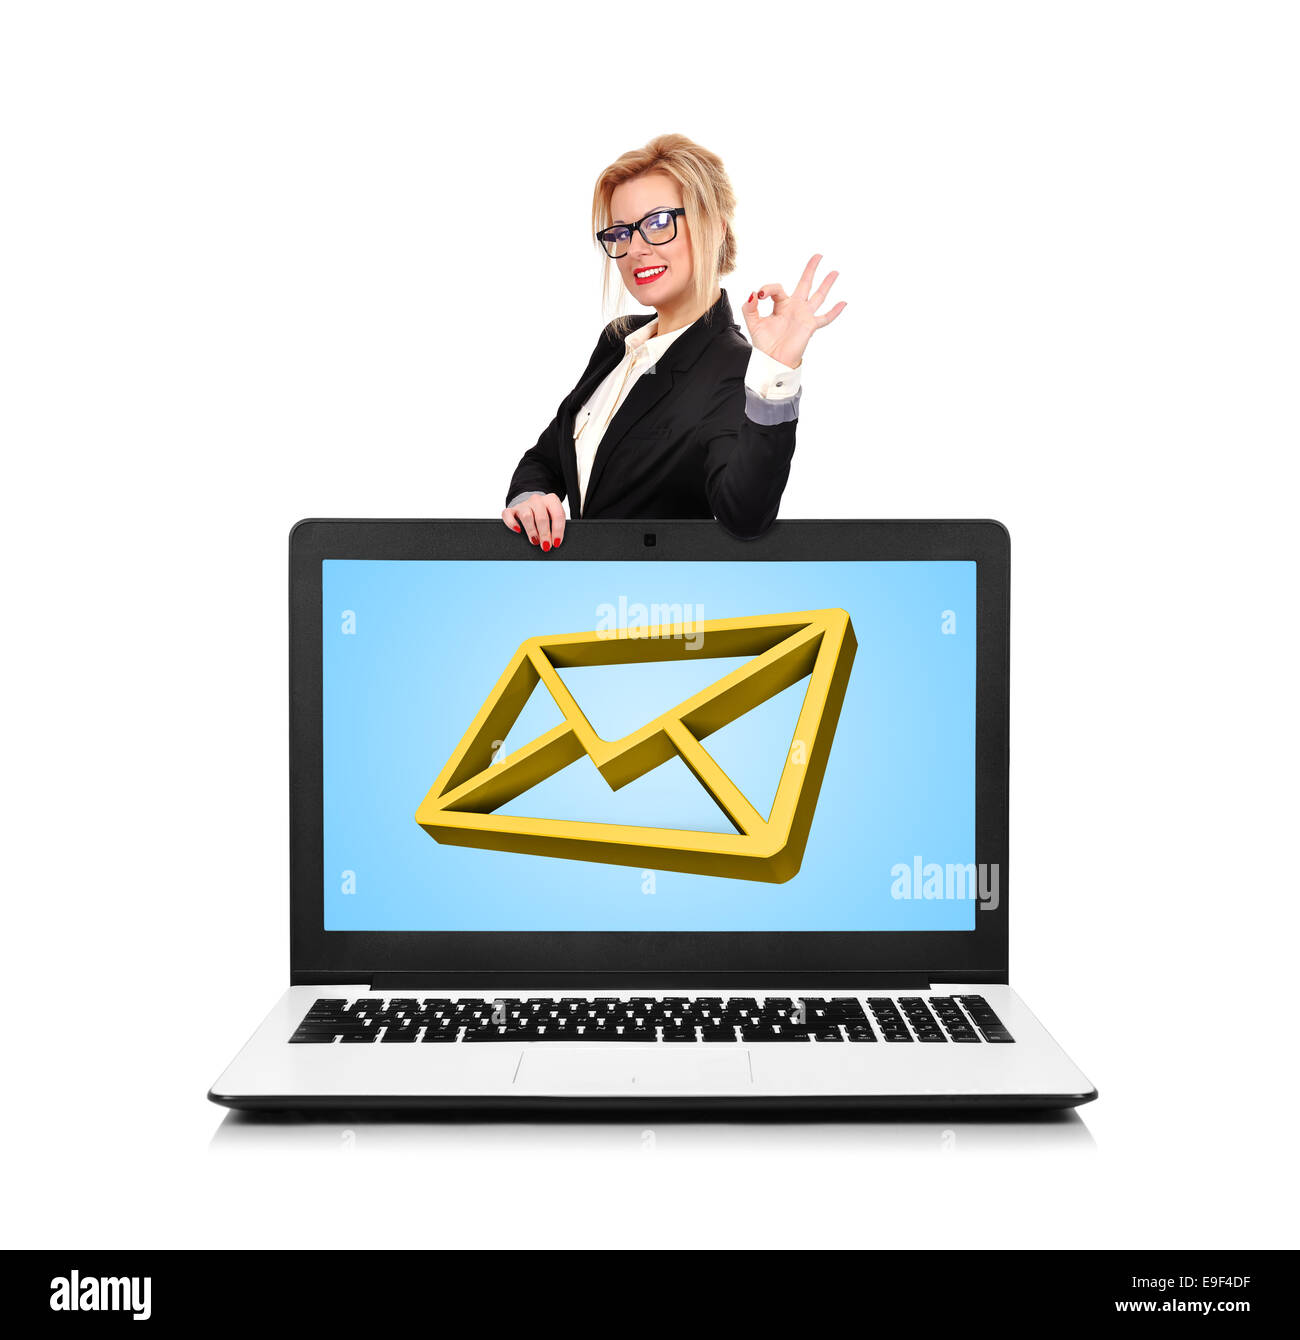 Happy businesswoman standing près d'un ordinateur portable avec l'e-mail Banque D'Images